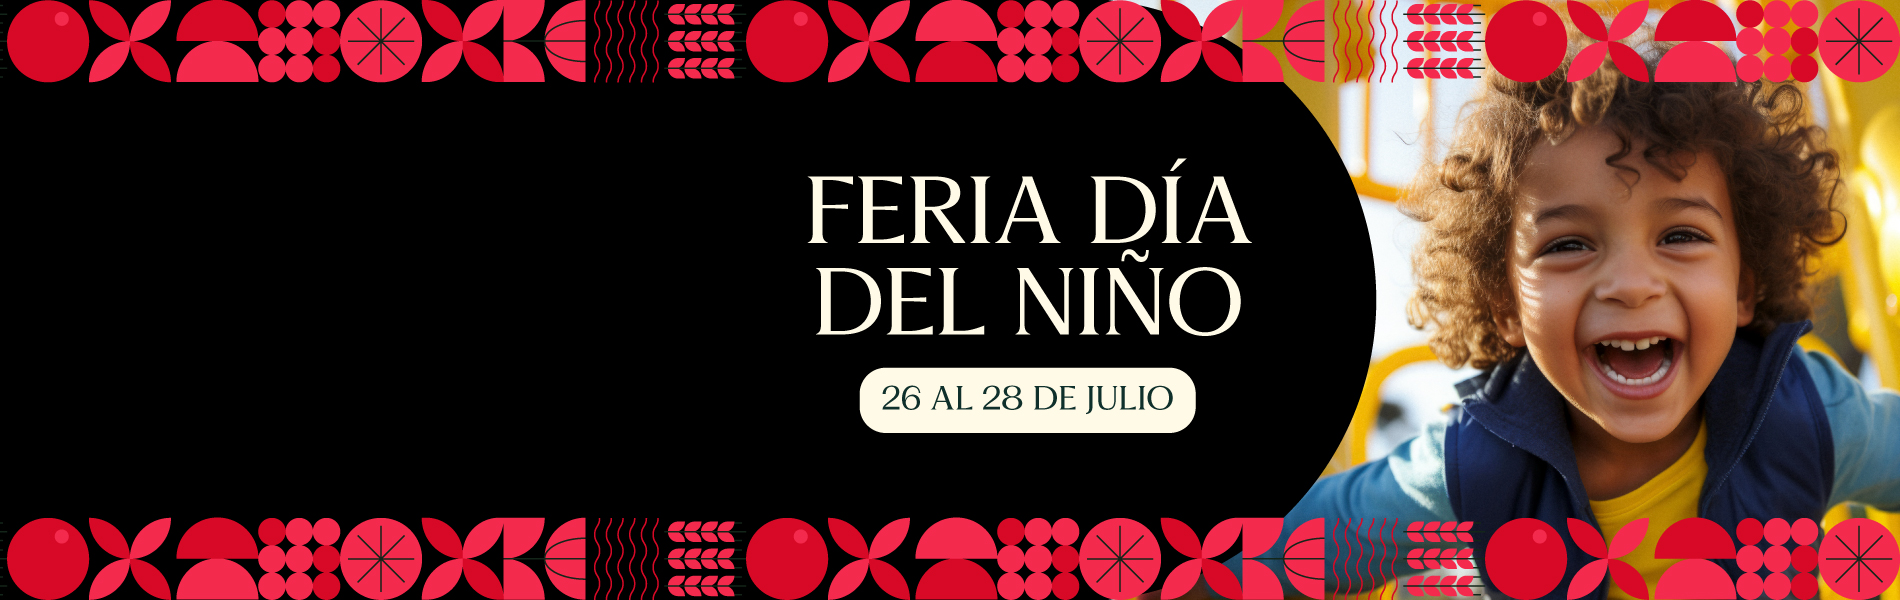 Banner Feria día del Niño